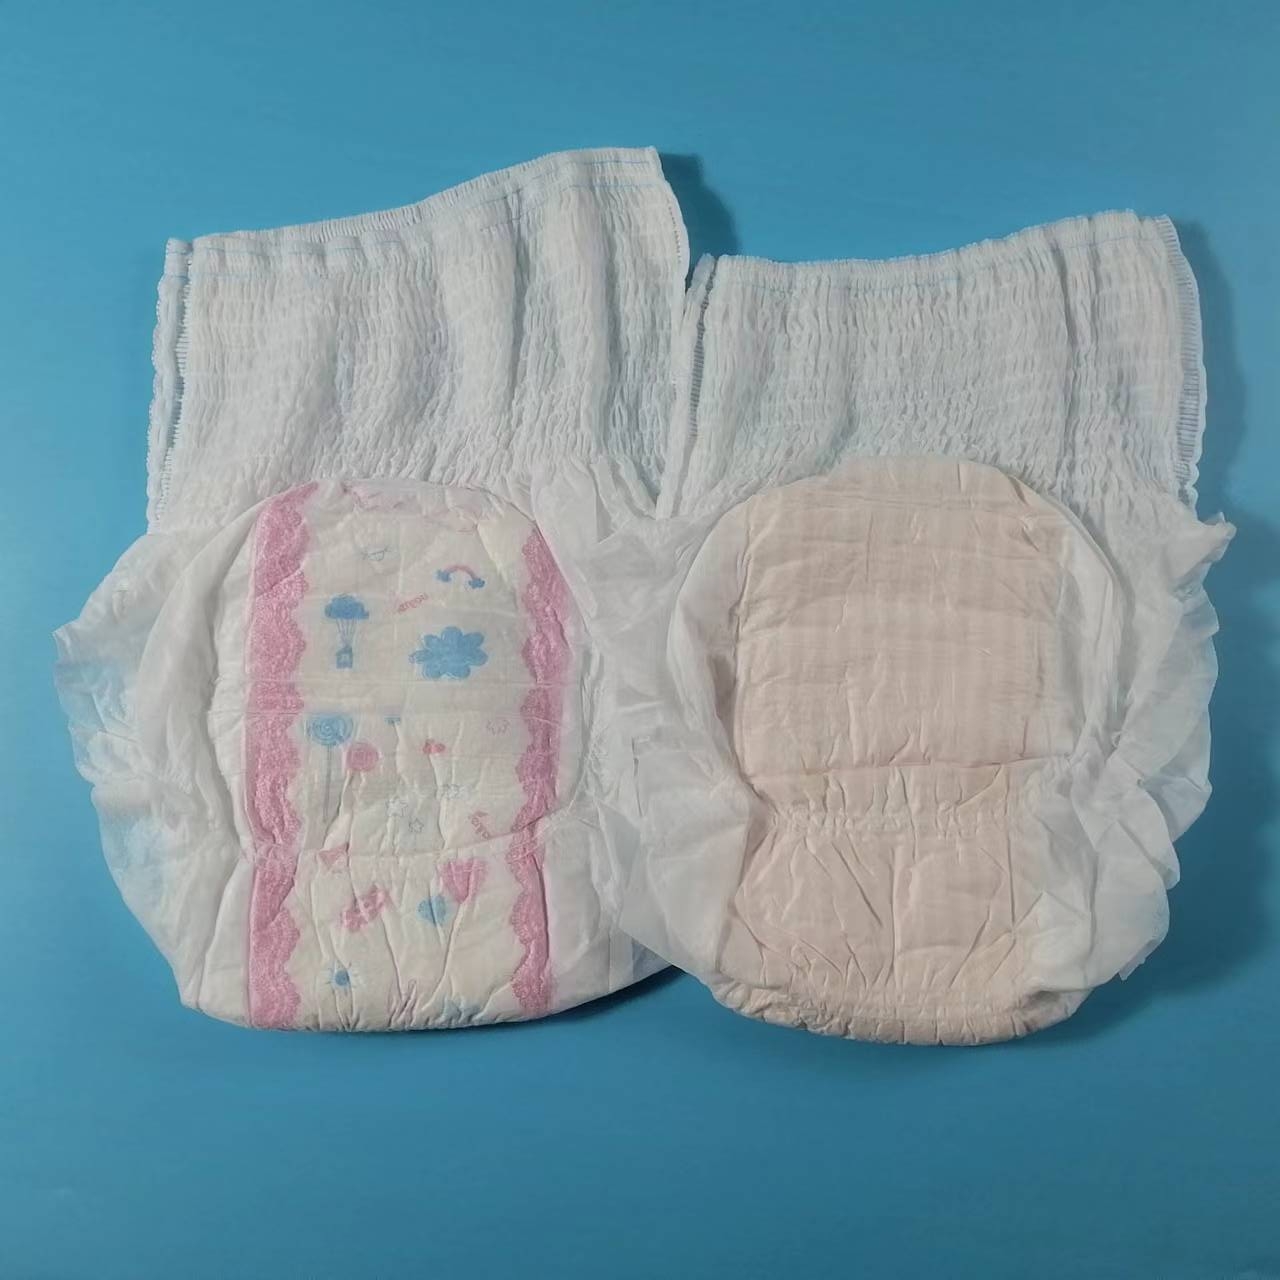 Giá rẻ vải thoáng khí tốt cho sức khỏe Cotton dùng một lần Băng vệ sinh chất lượng cao Quần dành cho phụ nữ mới làm mẹ